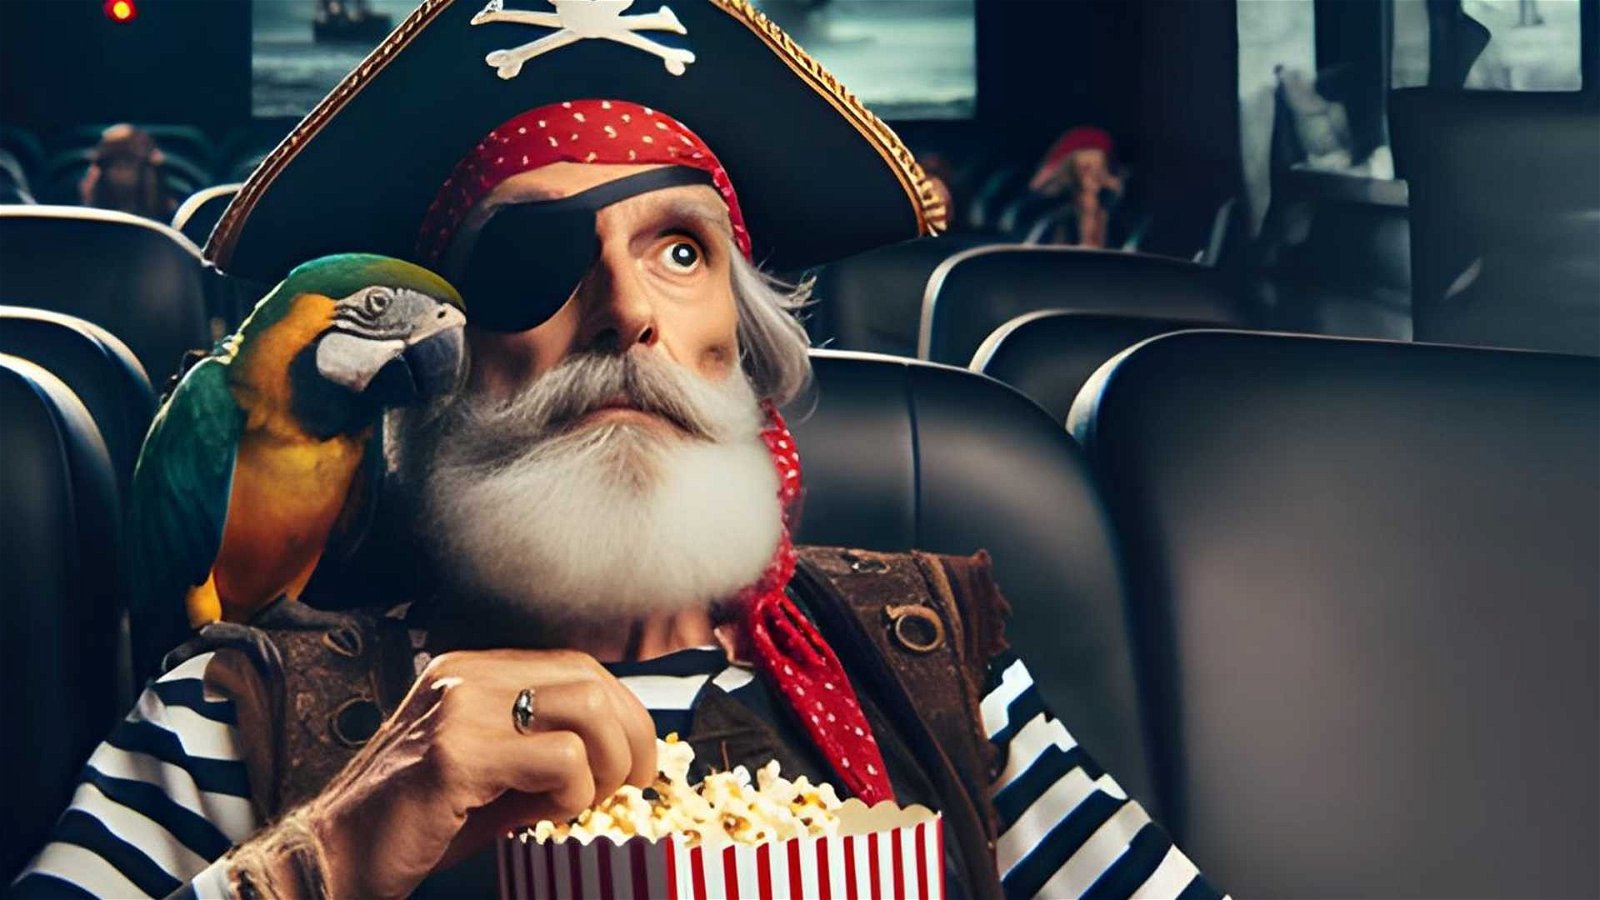 Immagine di [SONDAGGIO] Sei un tipo da film pirata? Lo eri? Lo sarai in futuro?